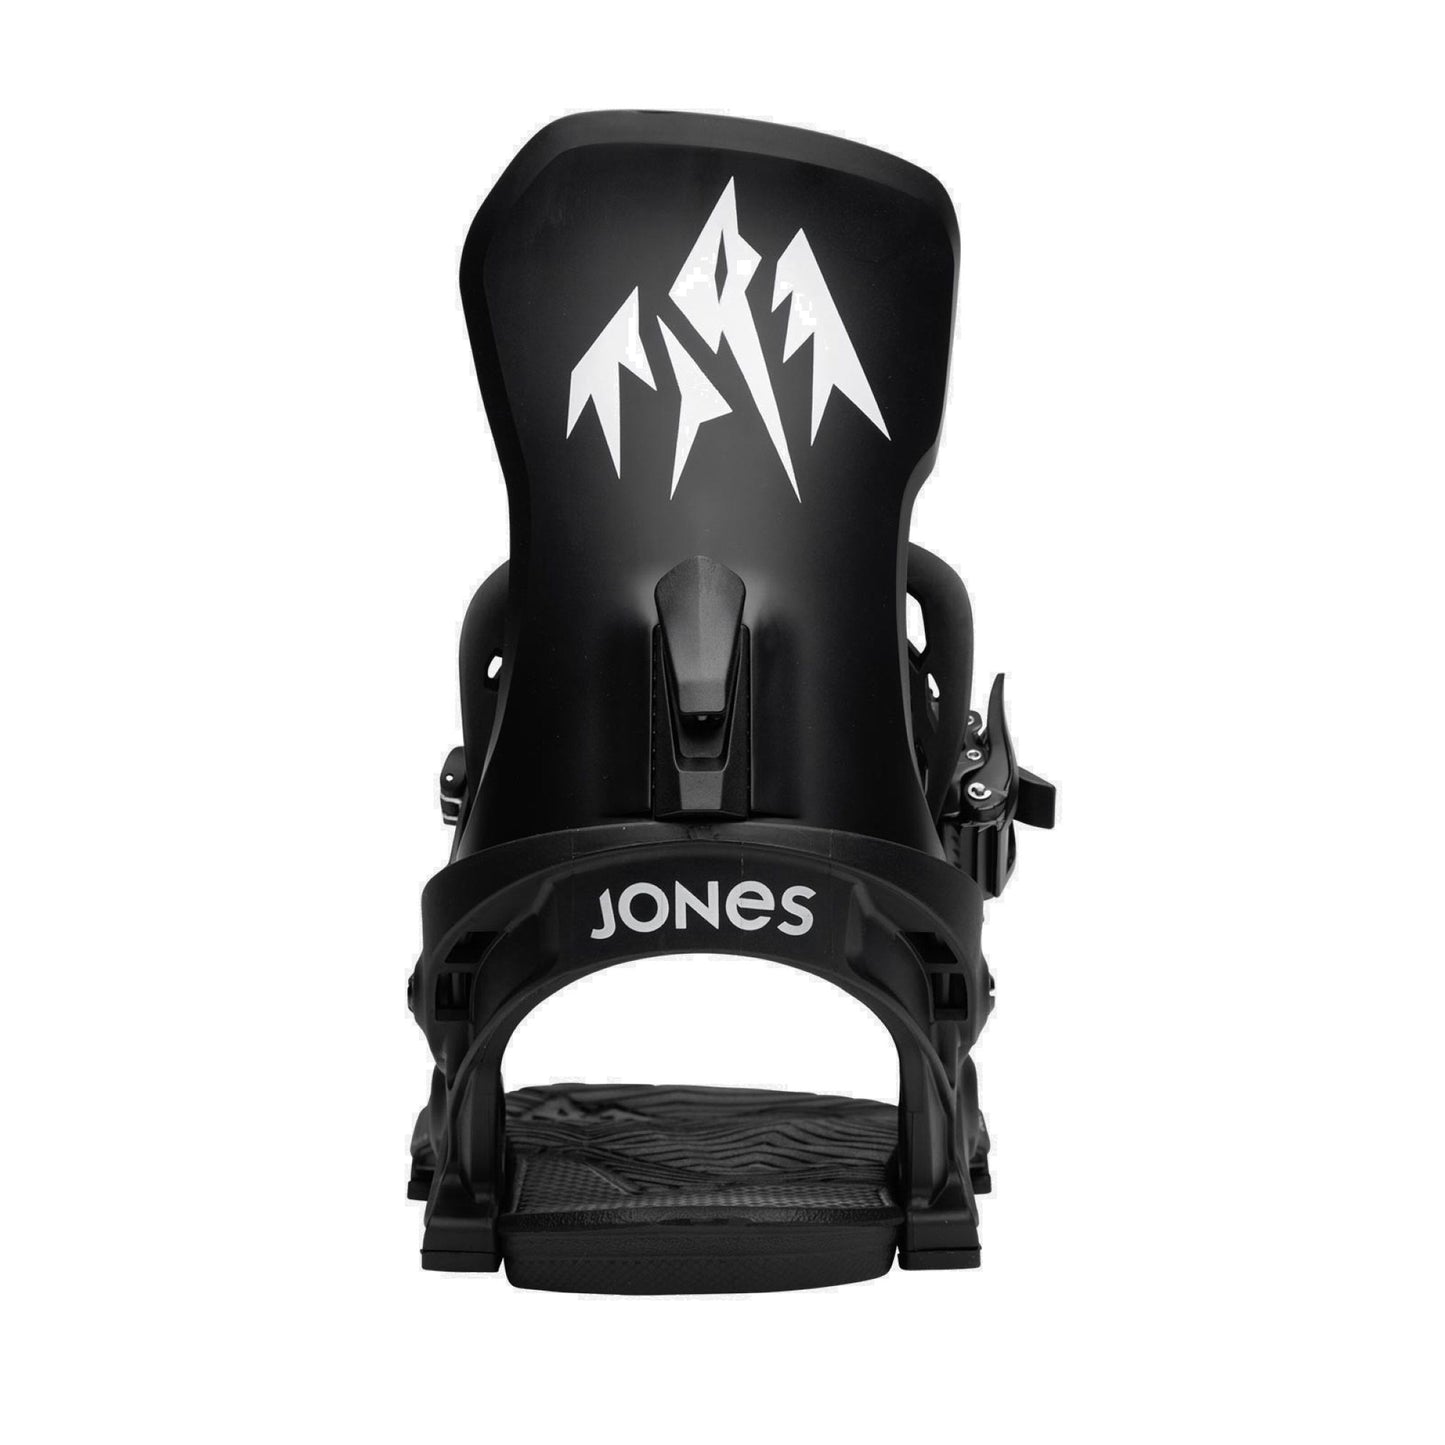 Jones Meteorite Snowboard Bindings Eclipse Black Snowboard Bindings